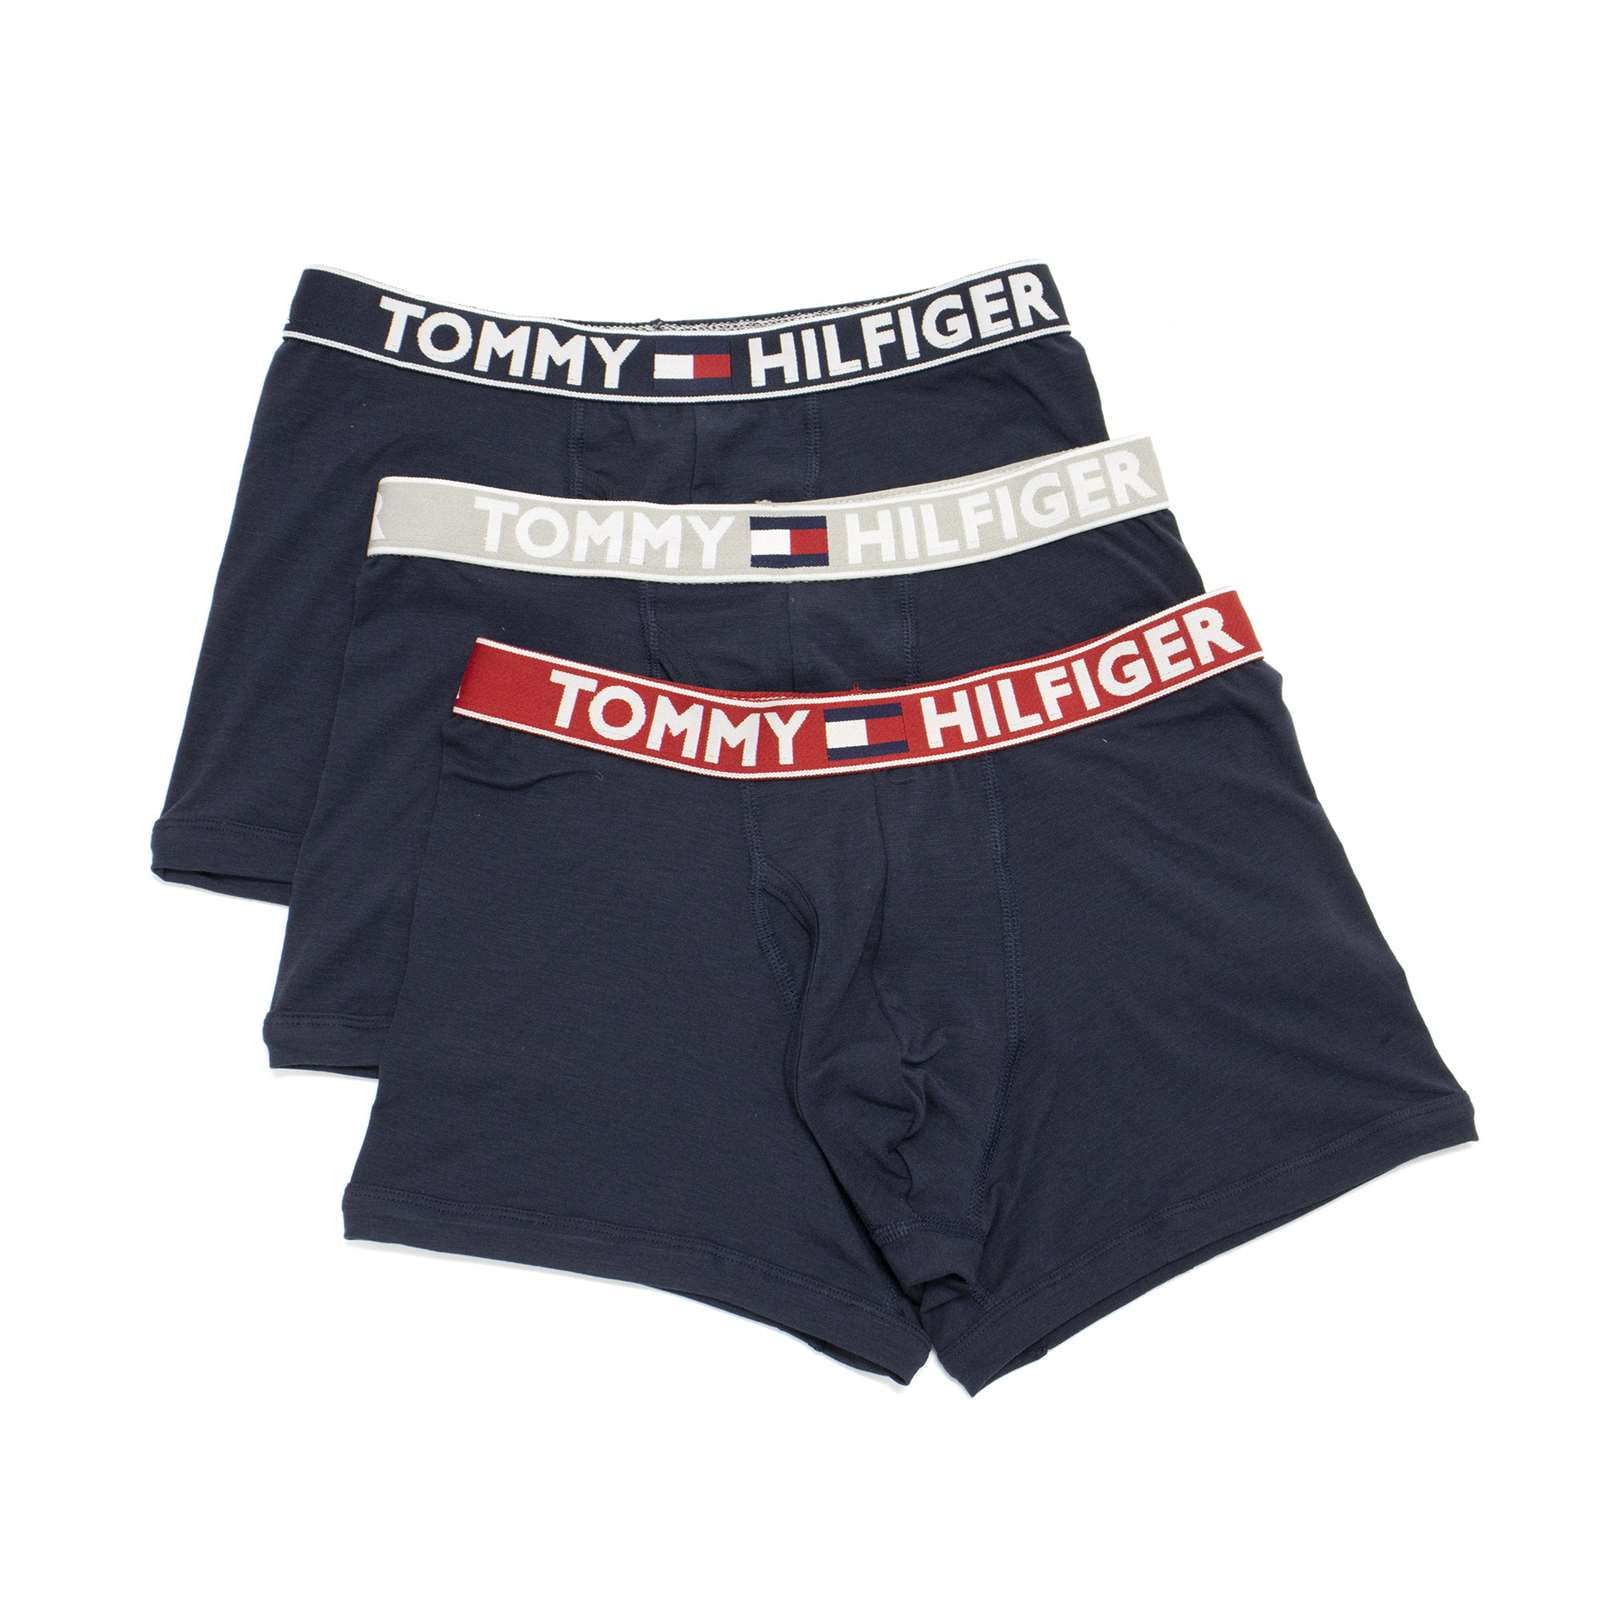 Tommy Hilfiger Men\'s Comfort 2.0 3 Pack Trunks, Dark Navy,M - US